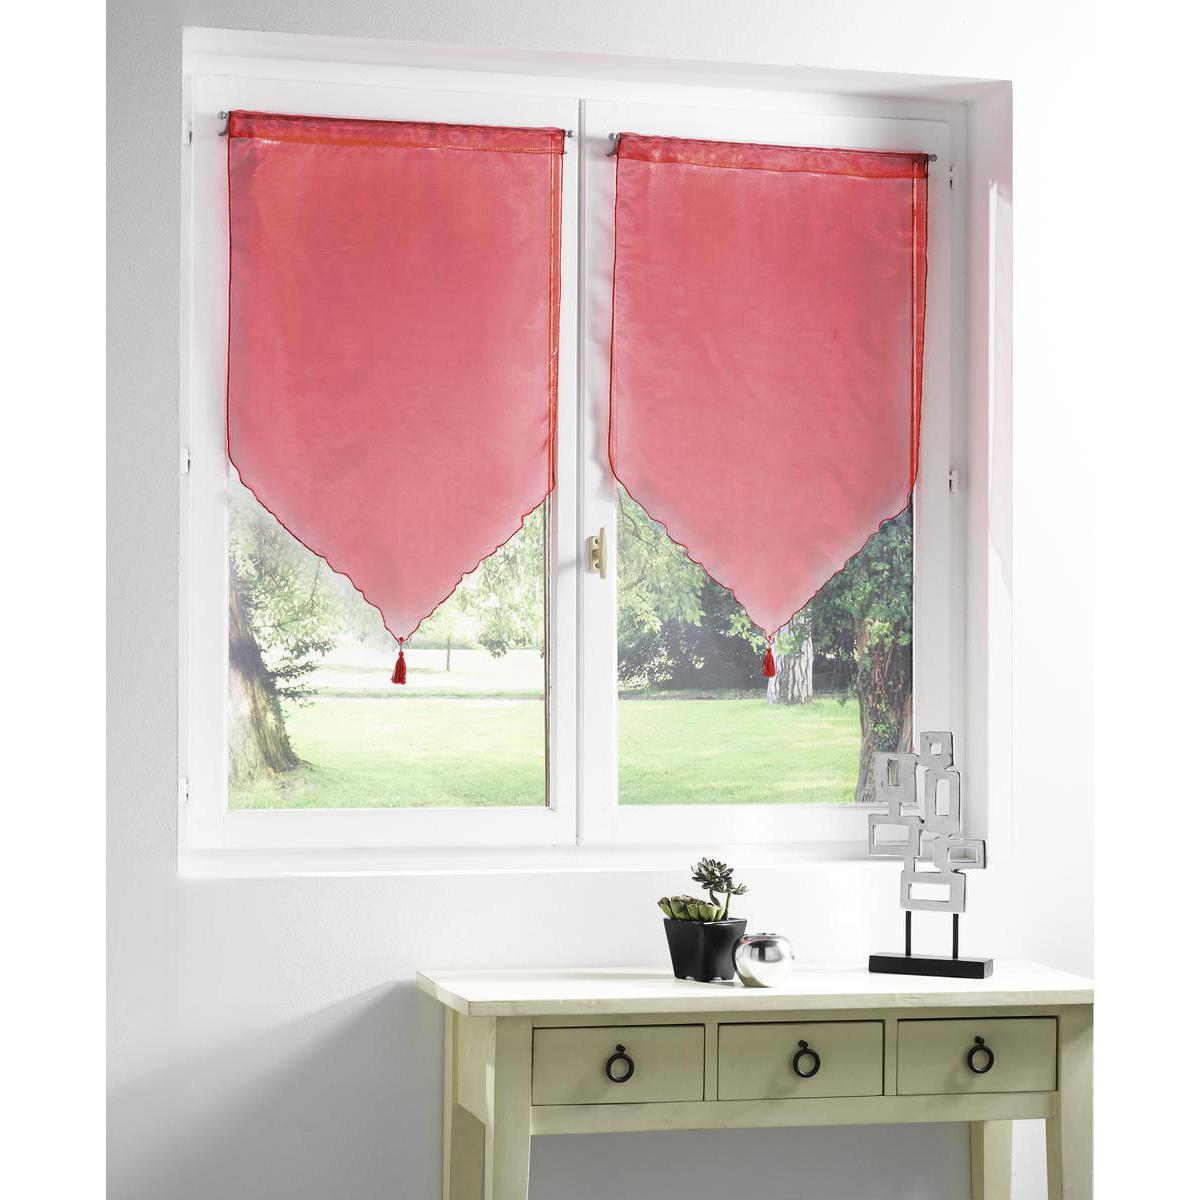 Paire de vitrages Juliette en polyester - 60 x 120 cm - Rouge